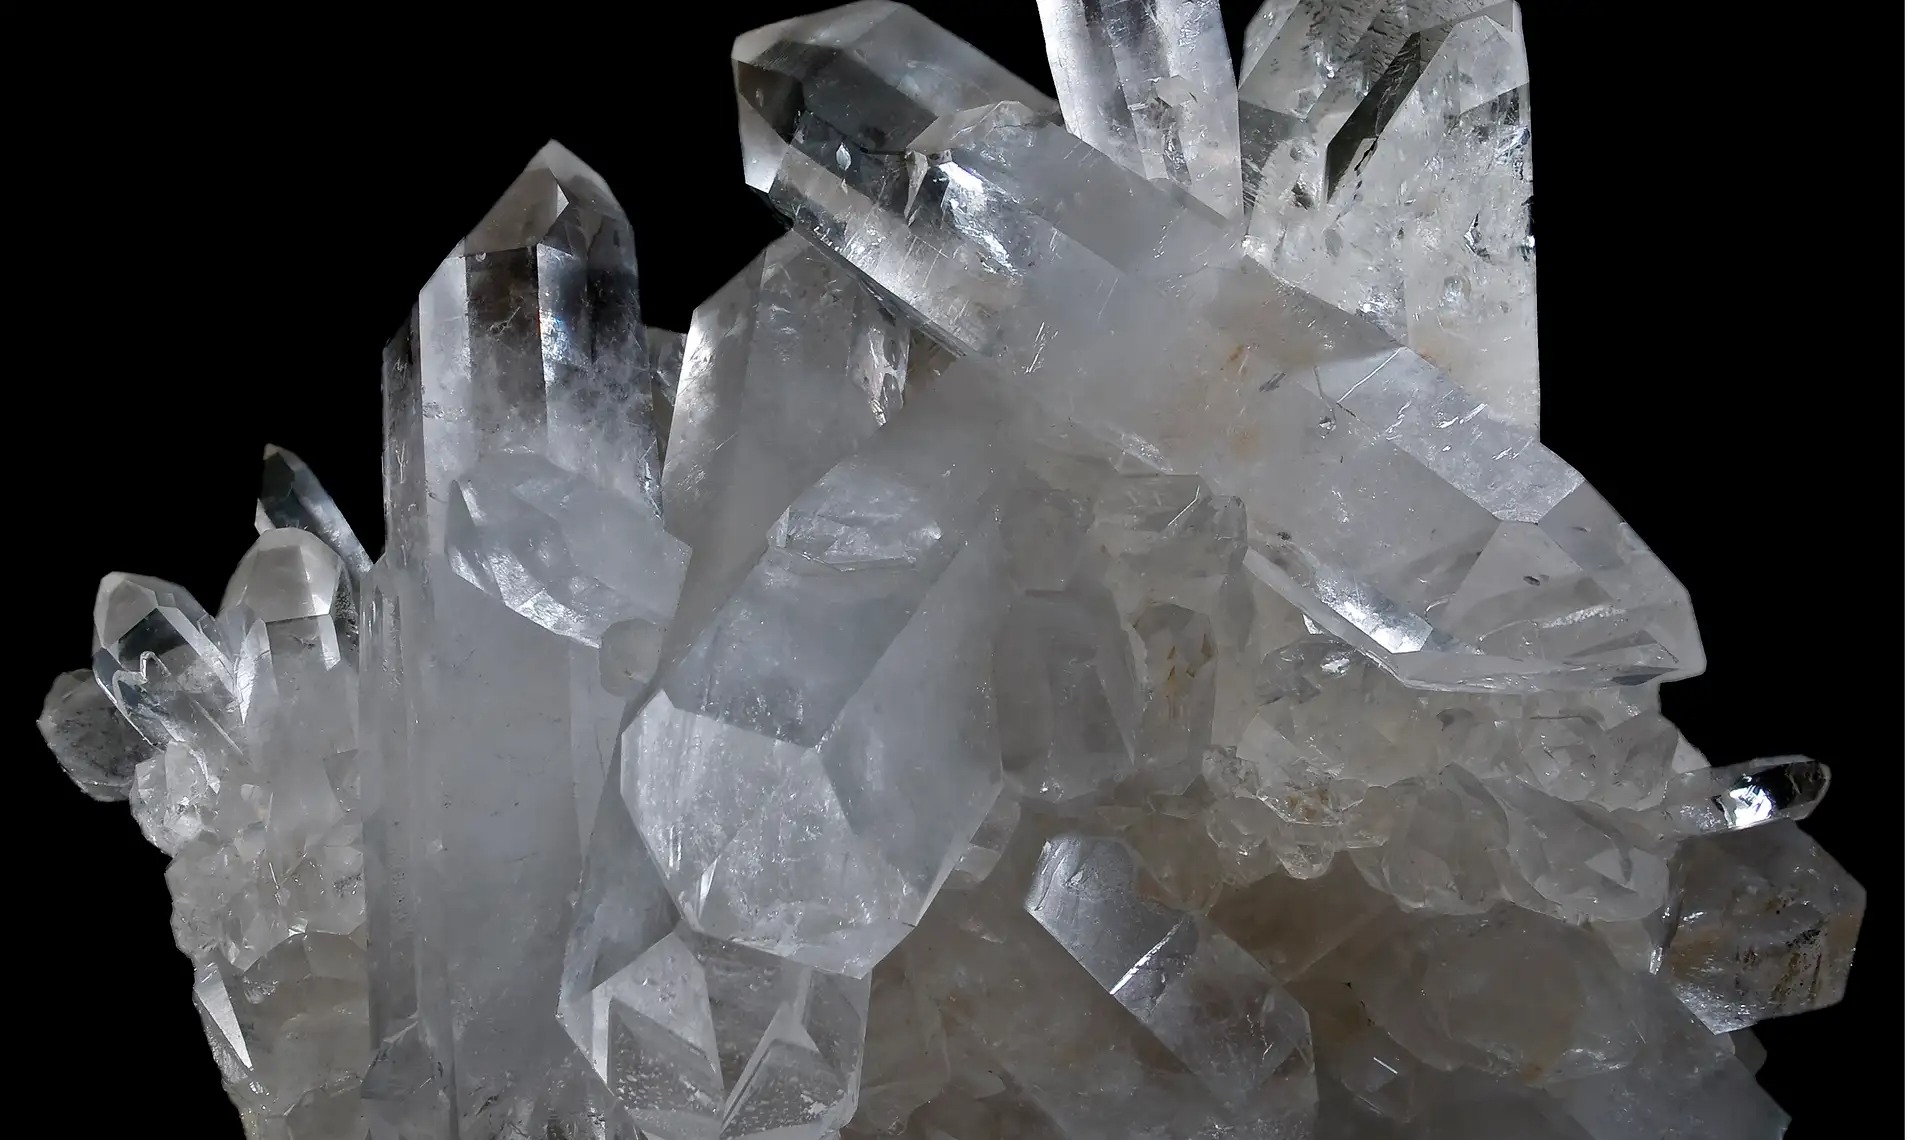 quartz bresil resize - Welches ist das seltenste Mineral der Welt?